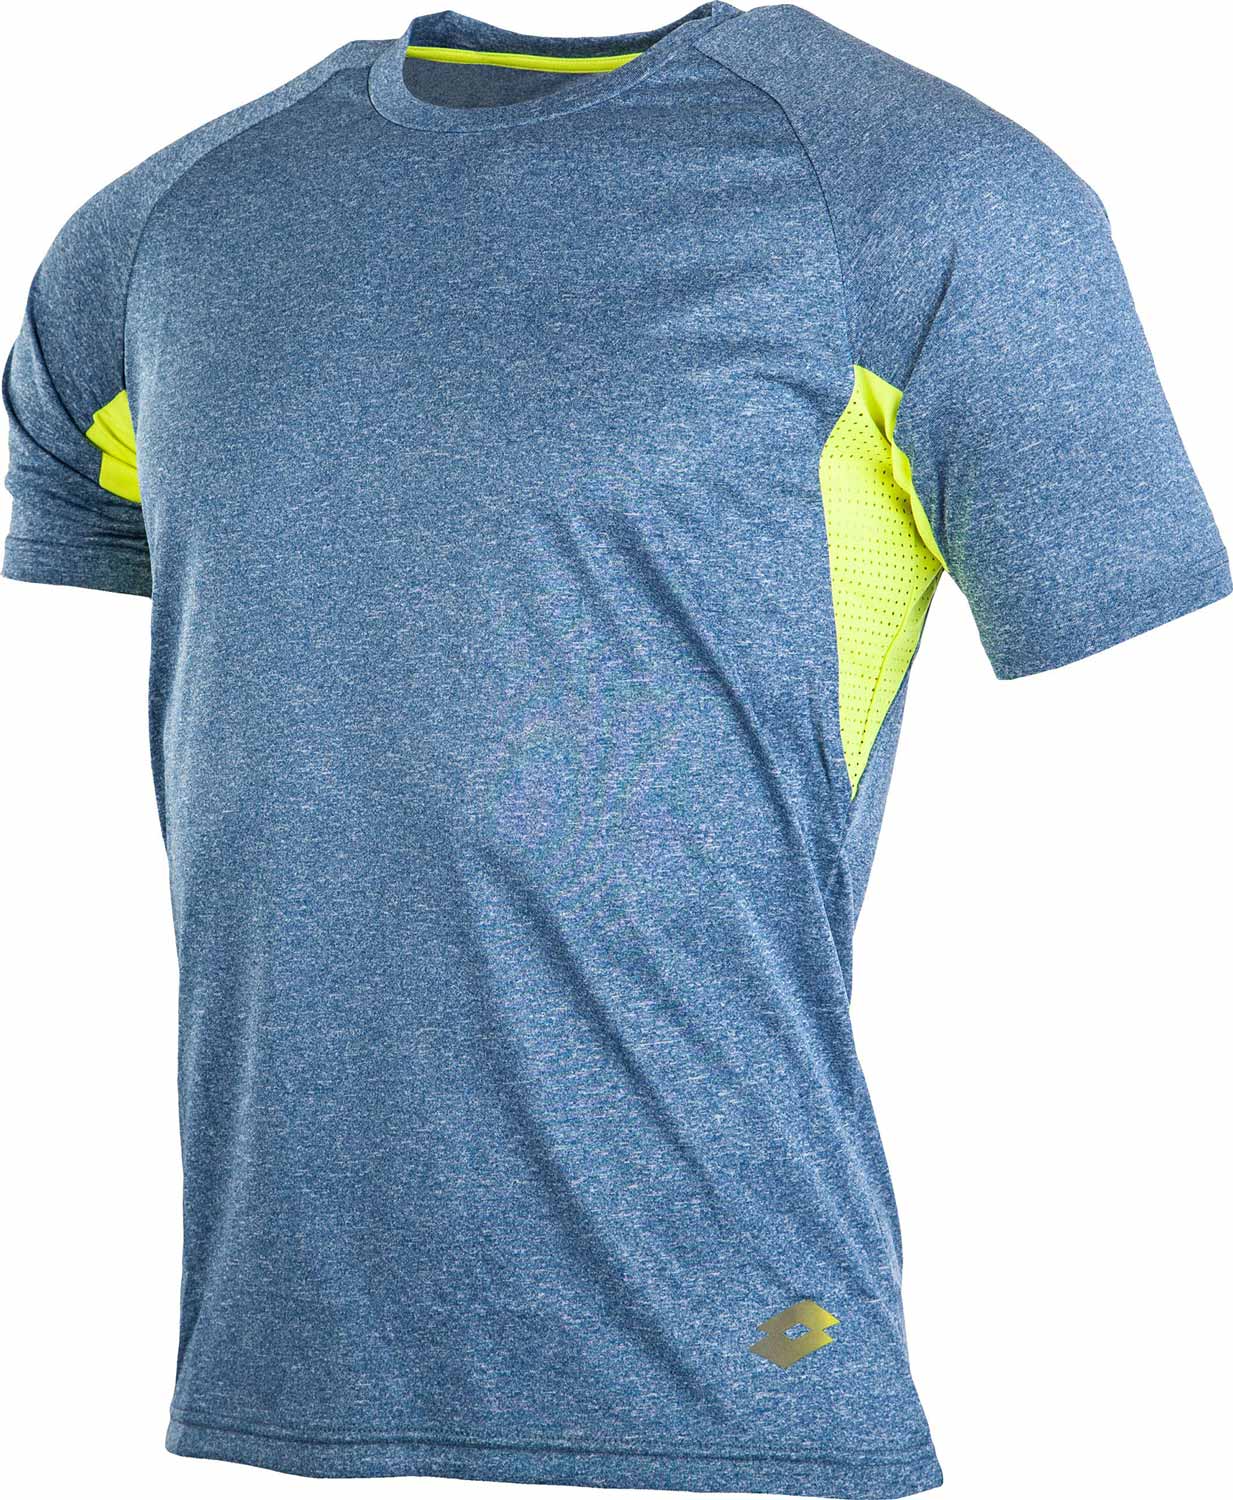 T-SHIRT FLASHRIDE - Pánské sportovní triko